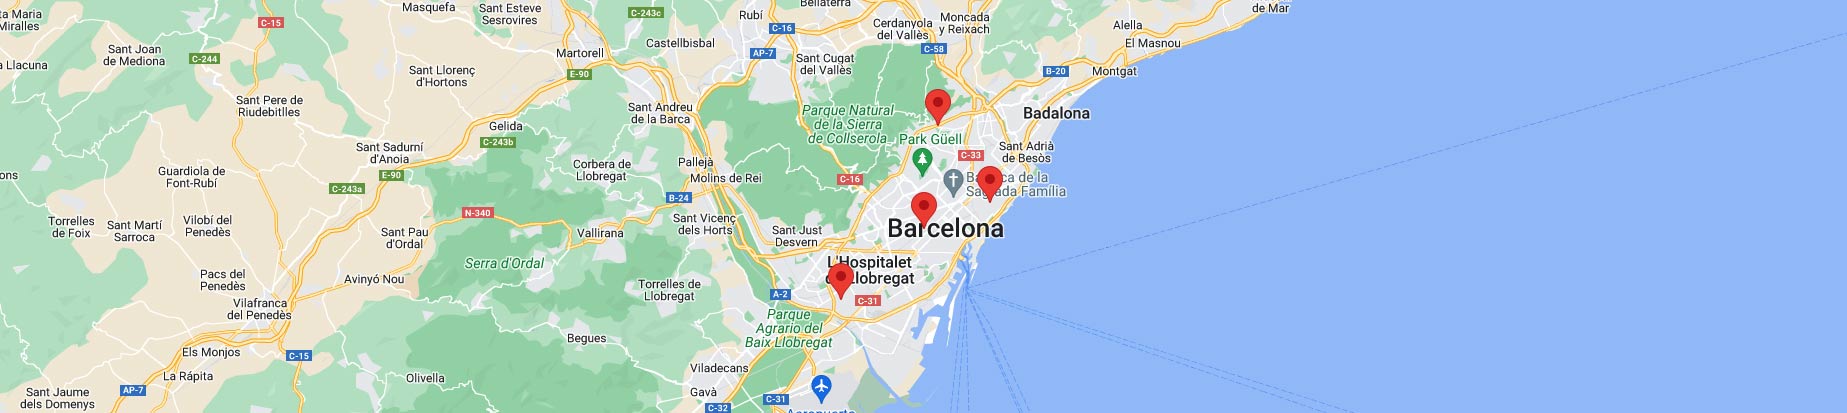 mapa tiendas barcelona